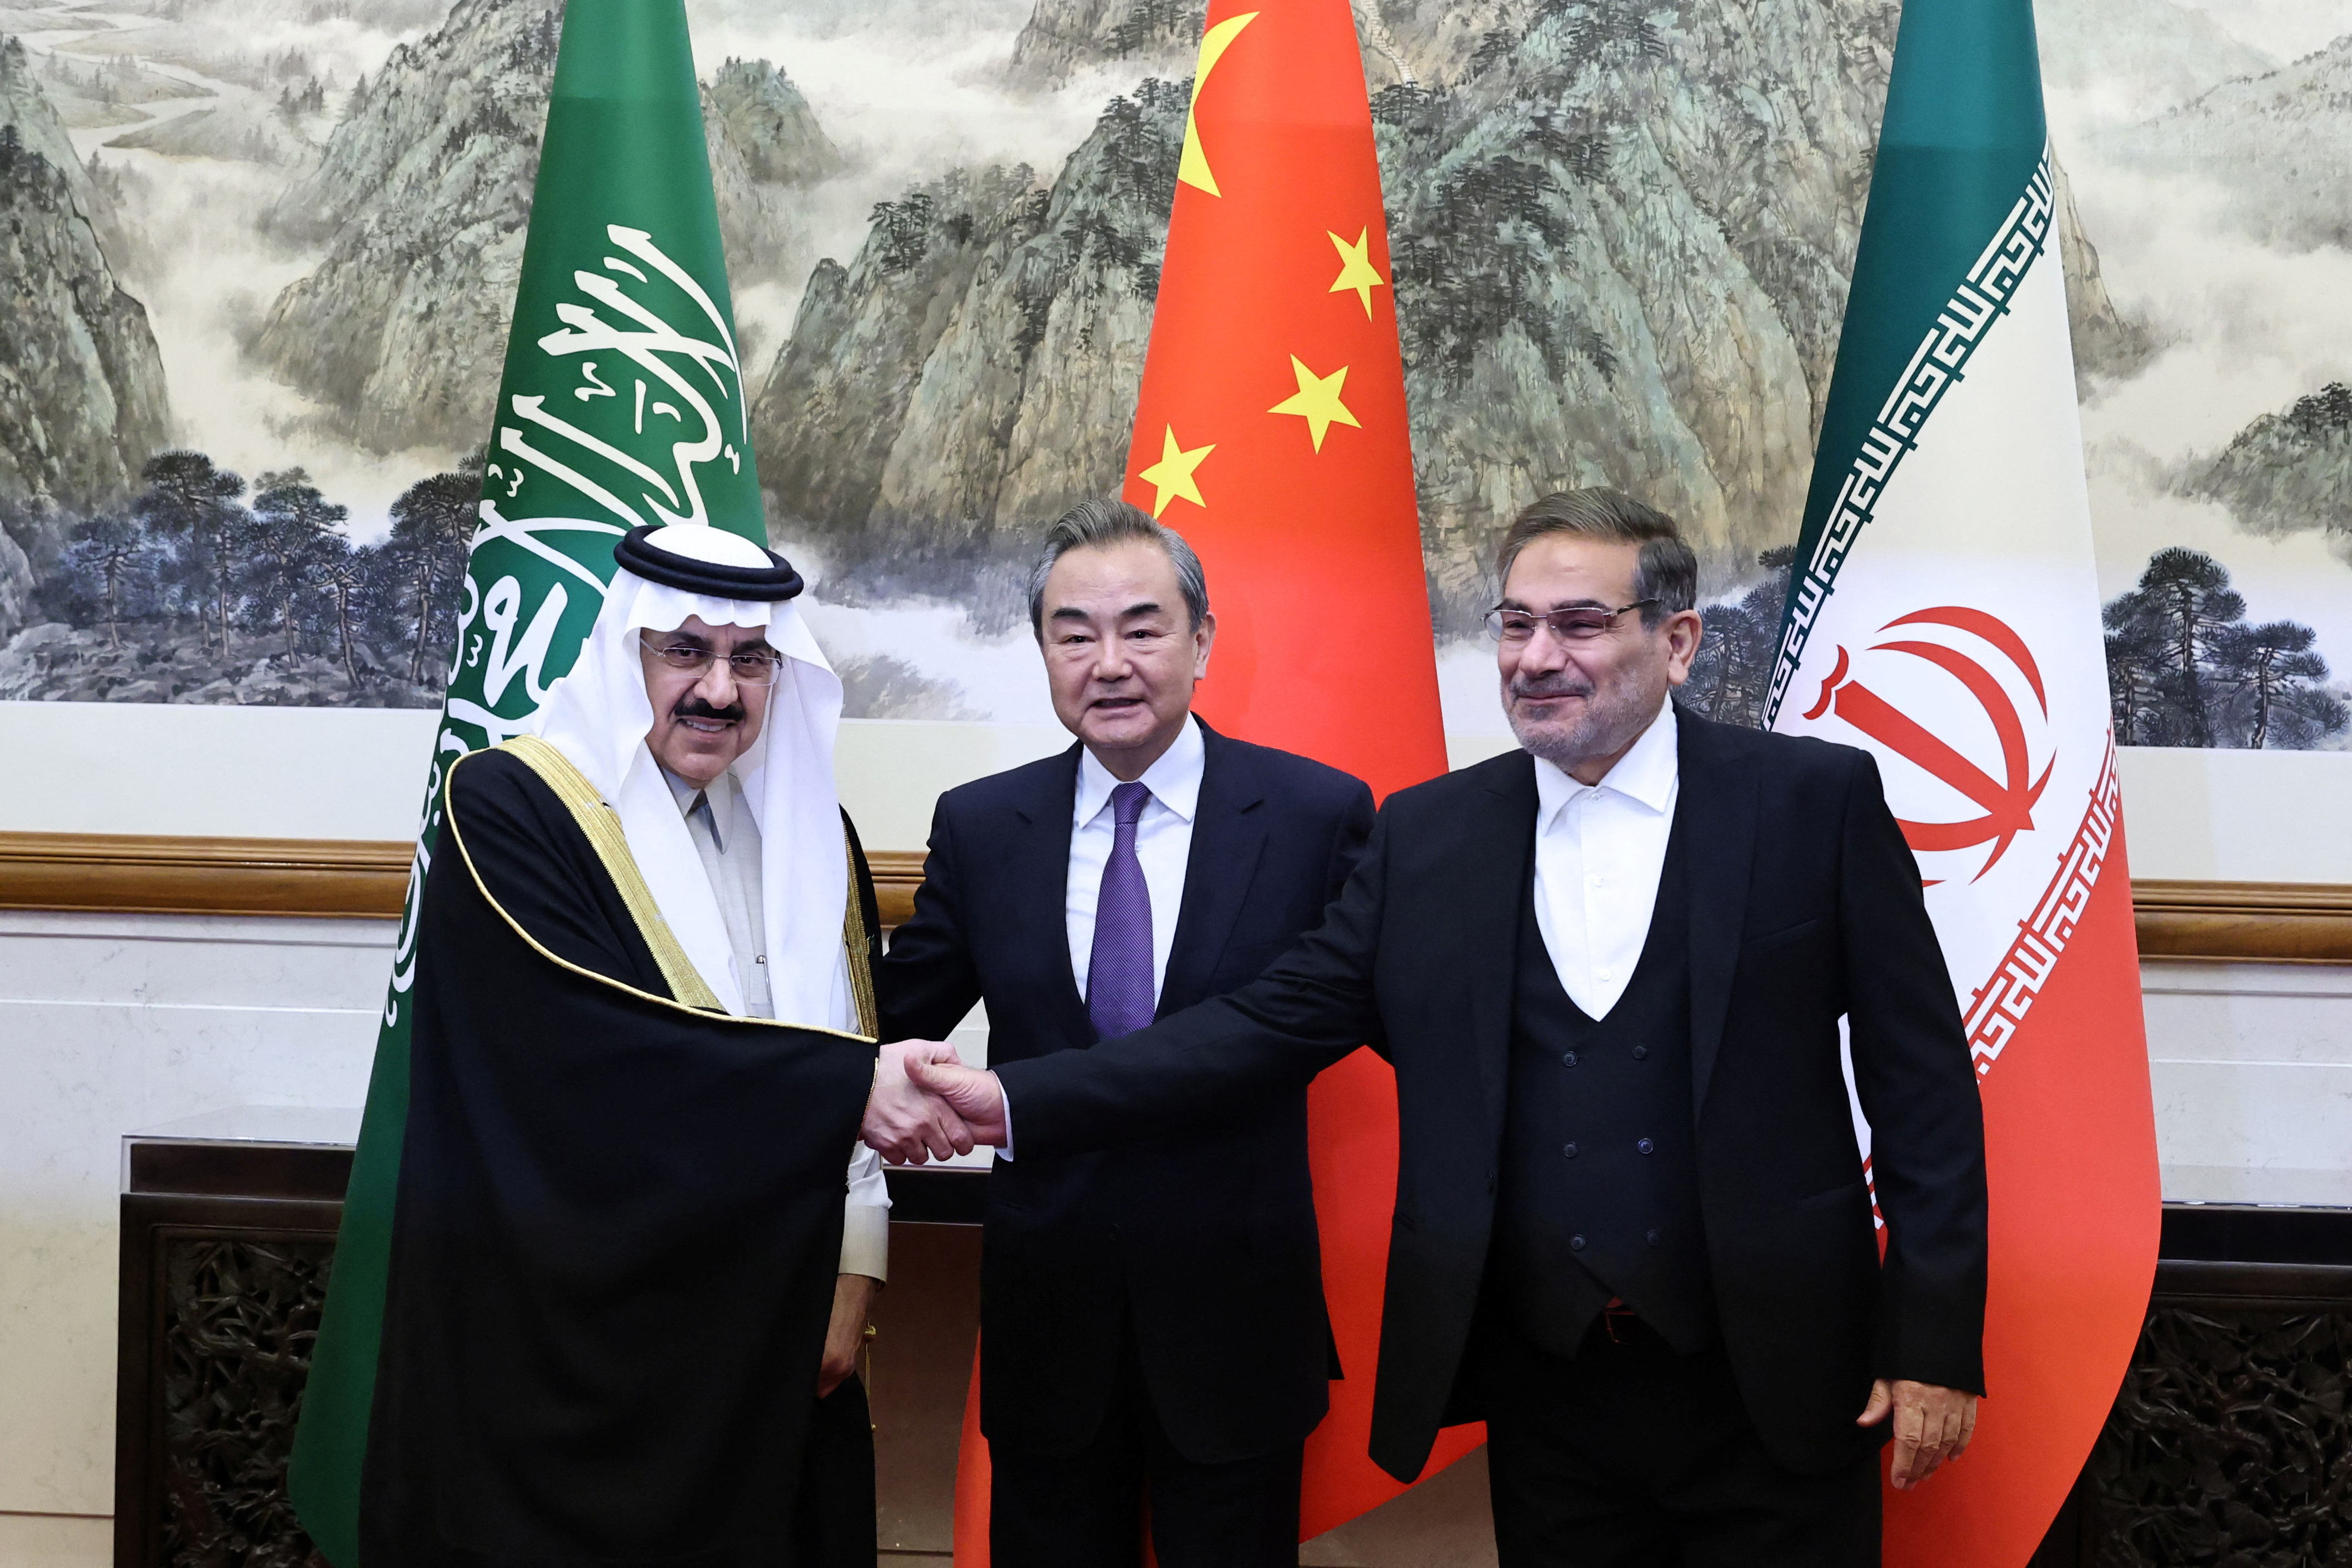 La detente saudí-iraní y la ascendente diplomacia de Beijing